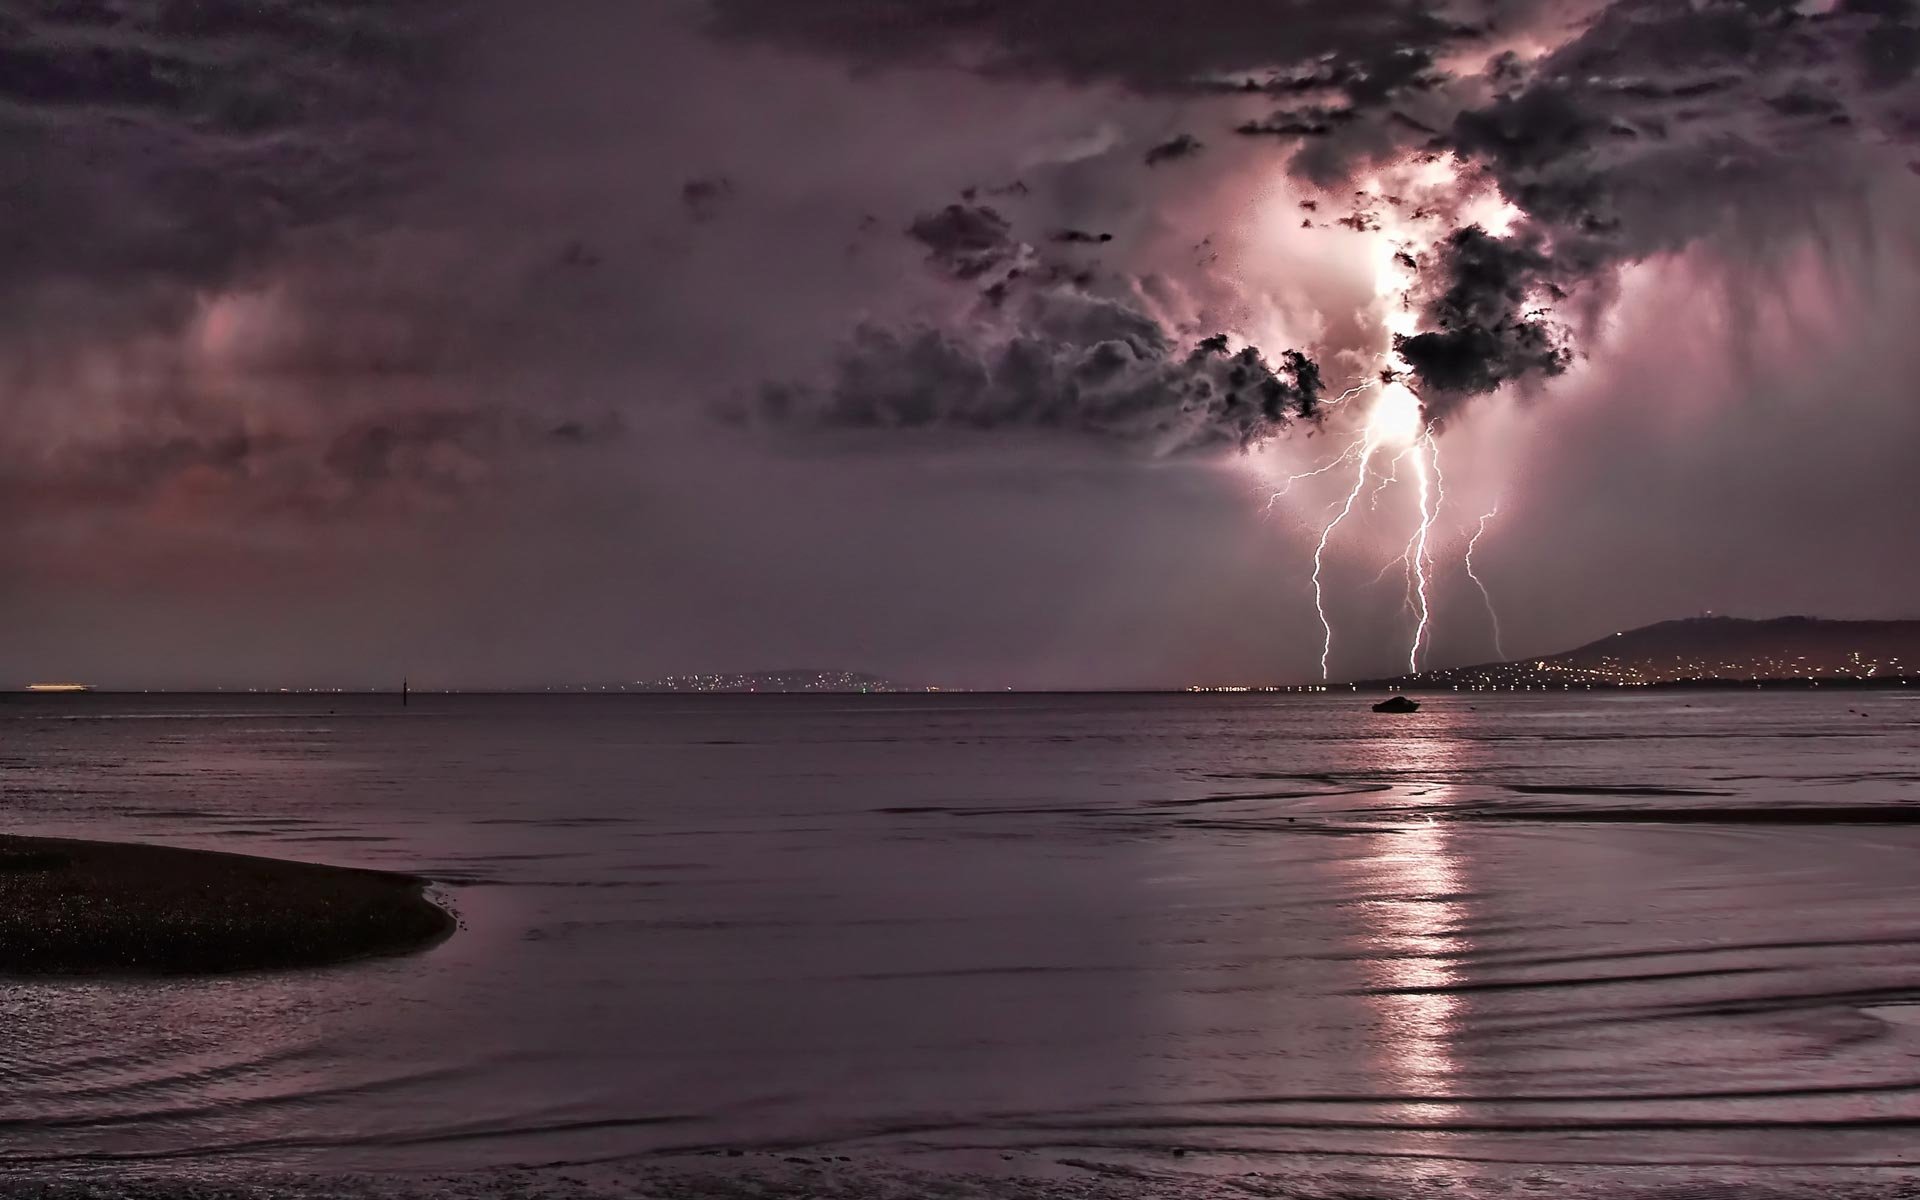 Lightning Storm Images Download Free | PixelsTalk.Net